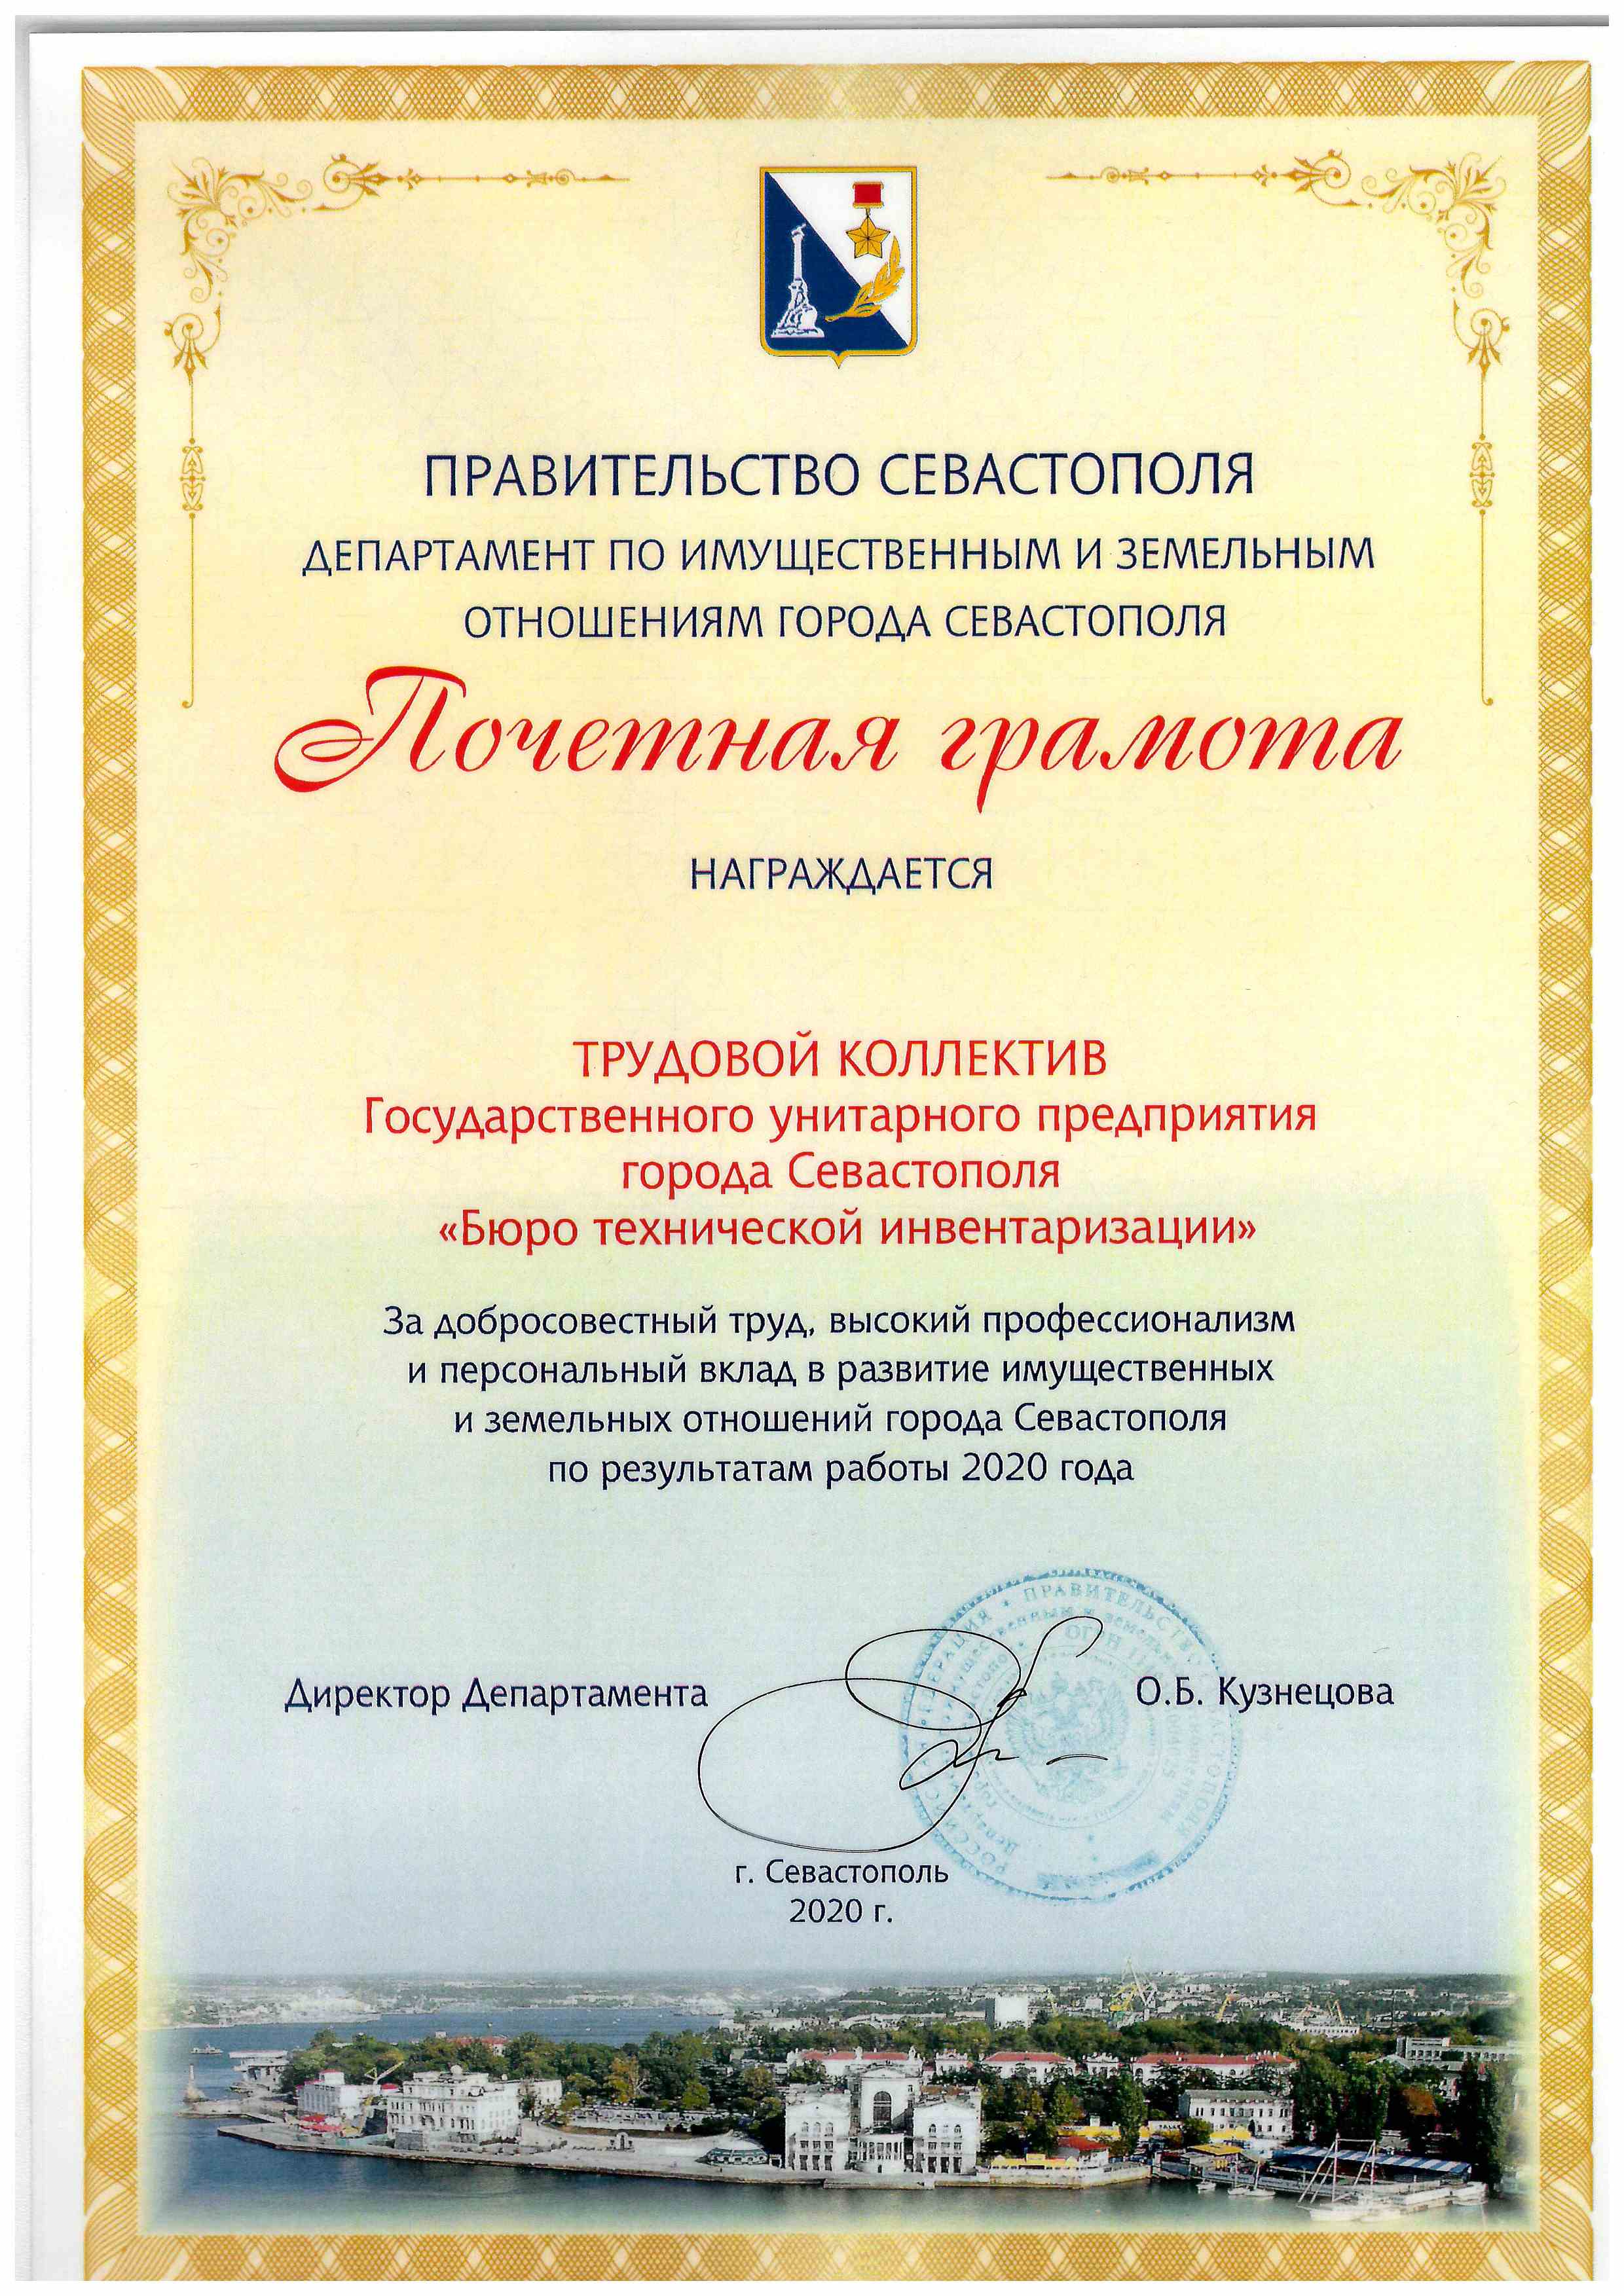 Почётная грамота трудовому коллективу ГУП г.Севастополя "БТИ"  от Департамента по имущественным и земельным отношениям, 2020